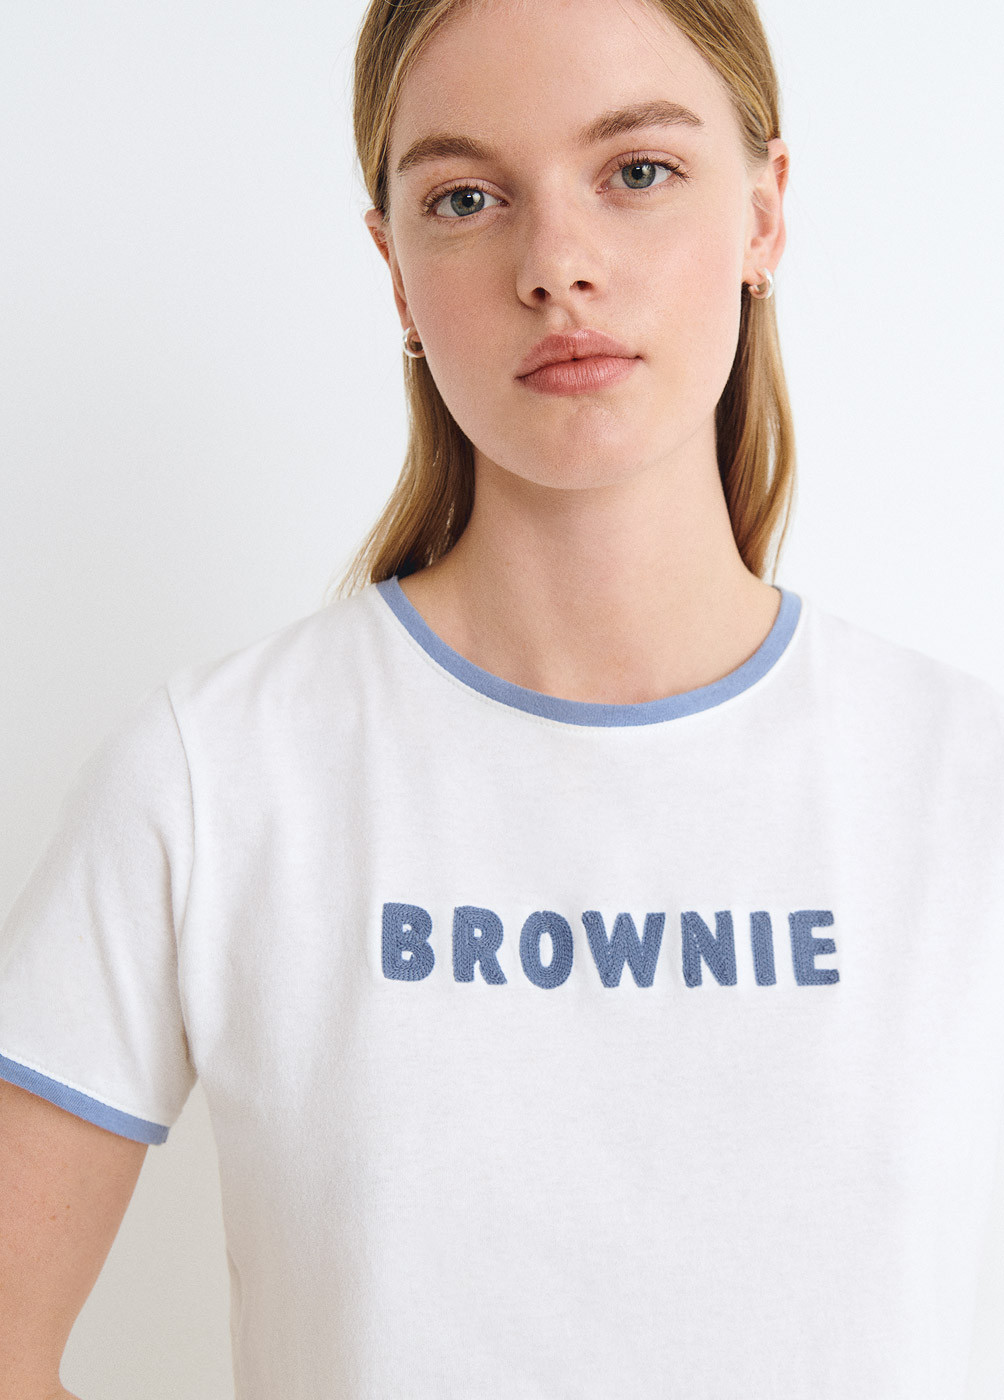 Camiseta brownie bordado...